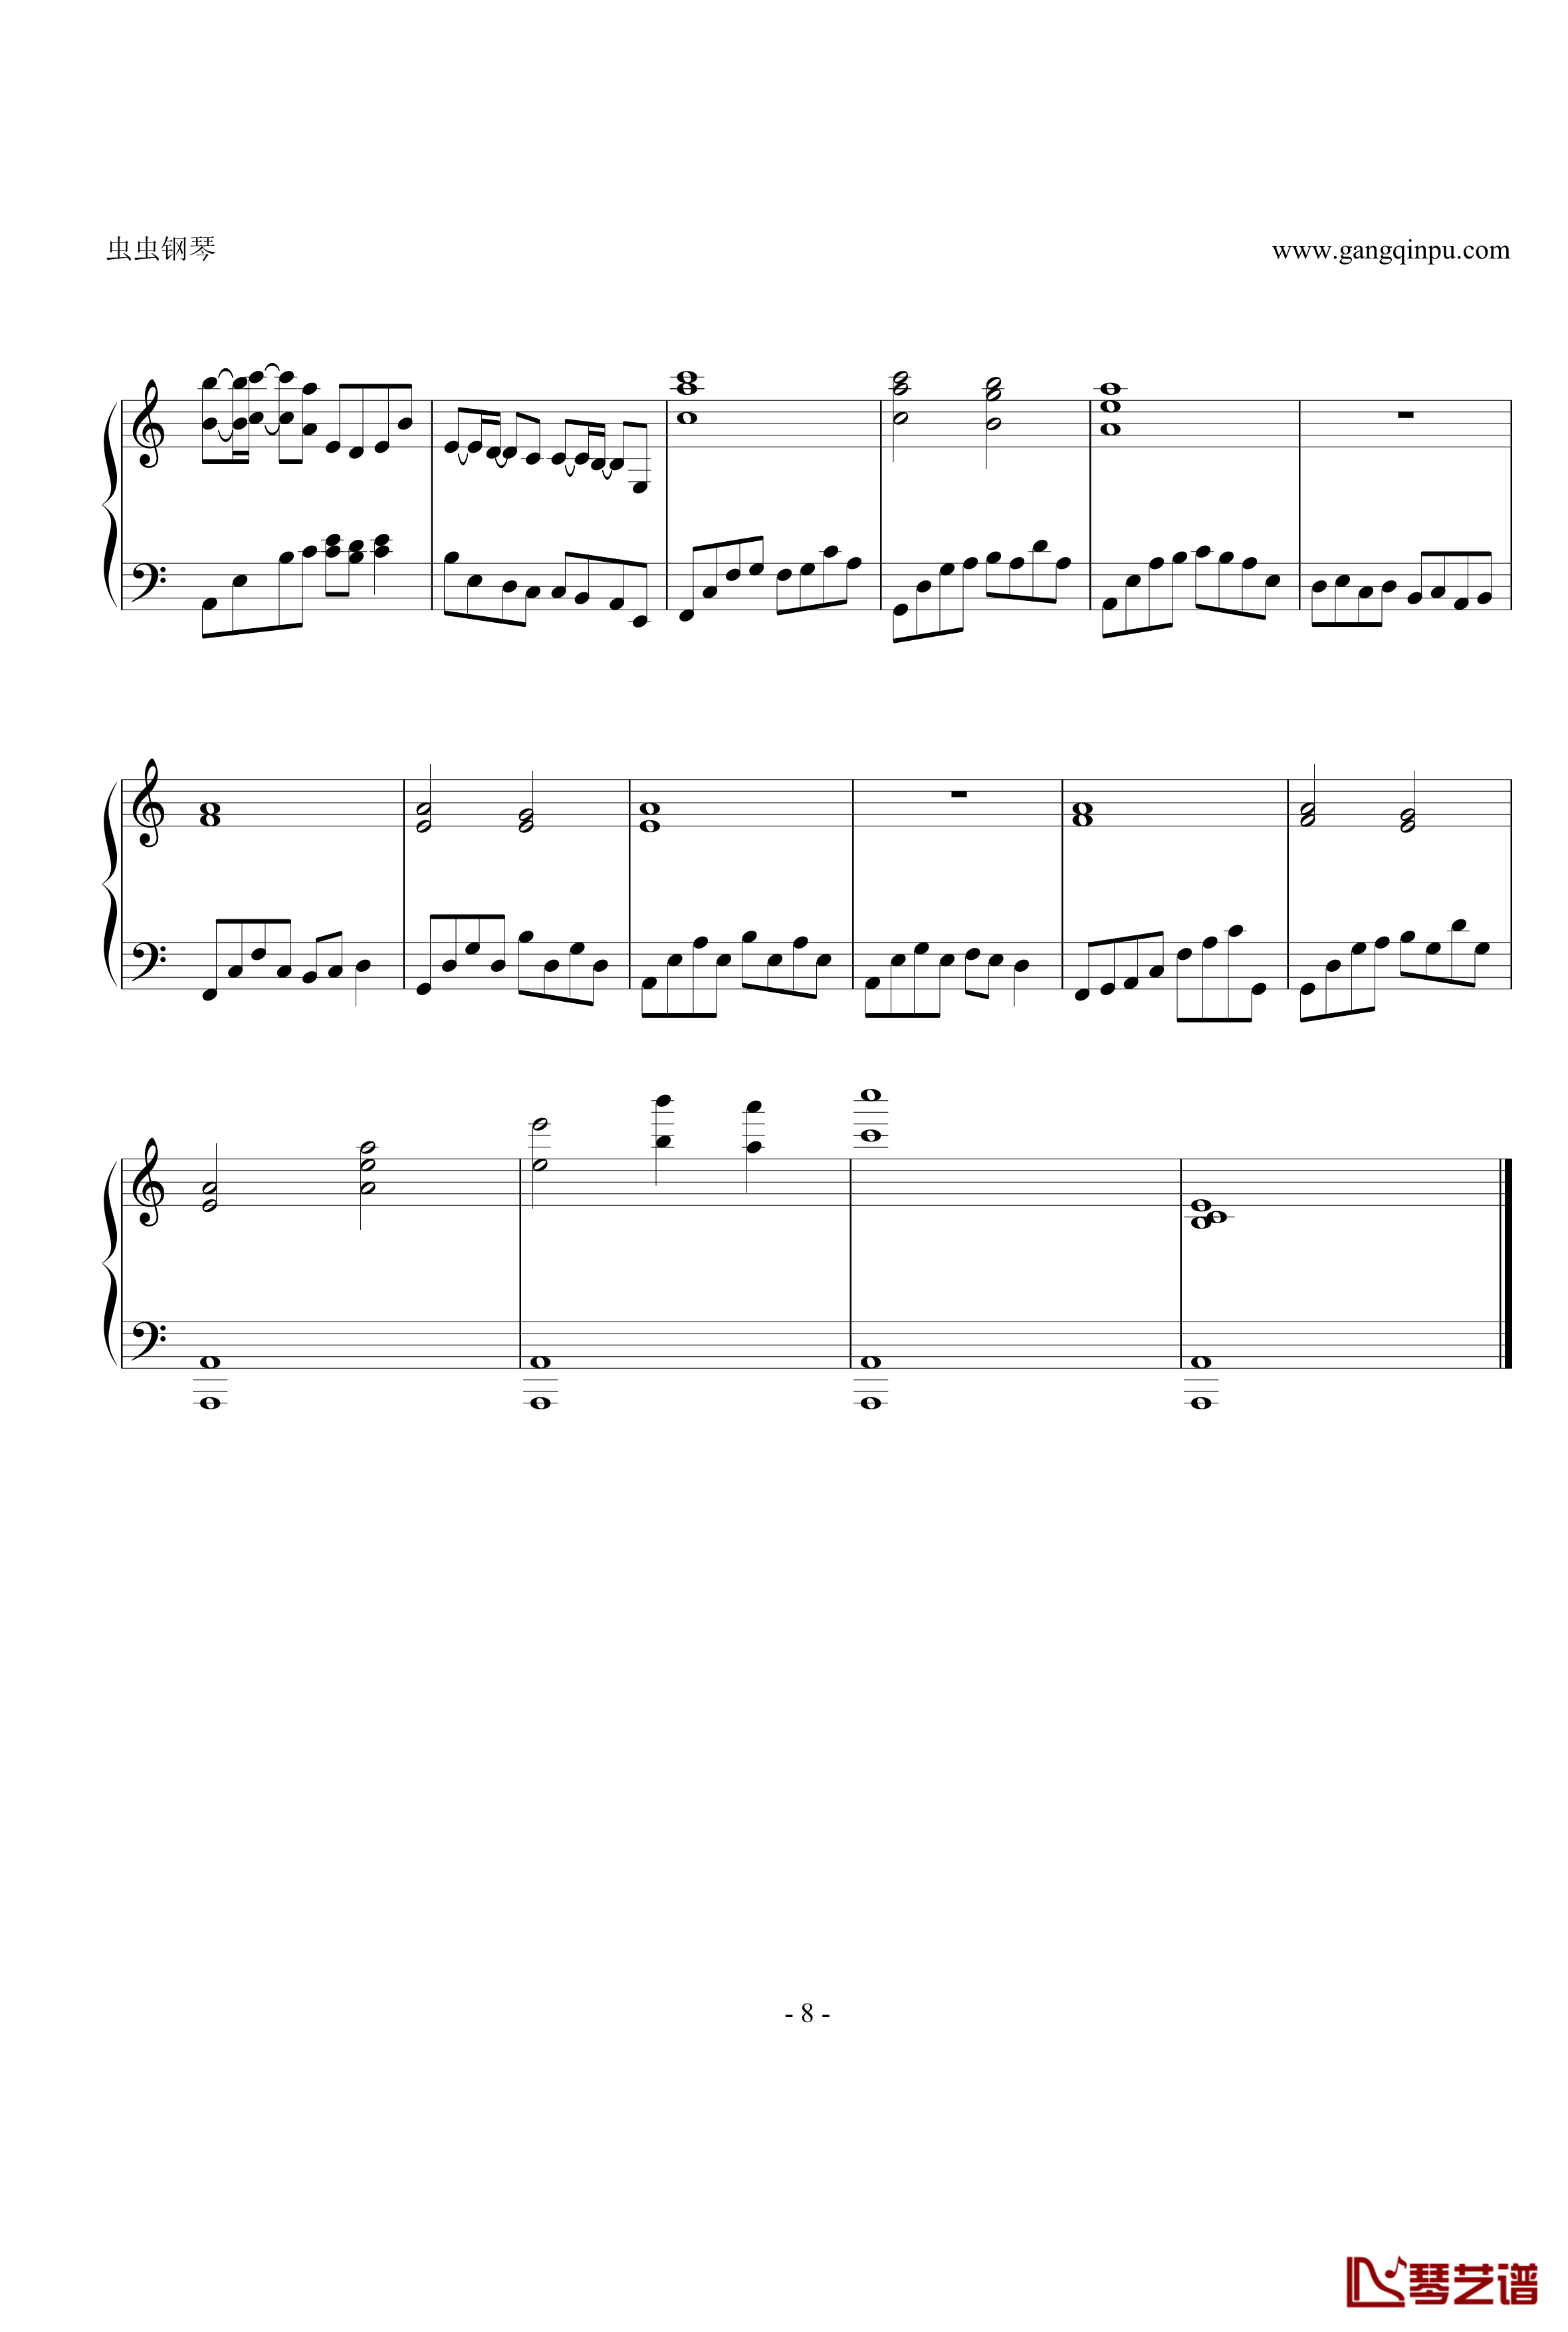 亡灵钢琴钢琴谱-修改版-电锯惊魂8